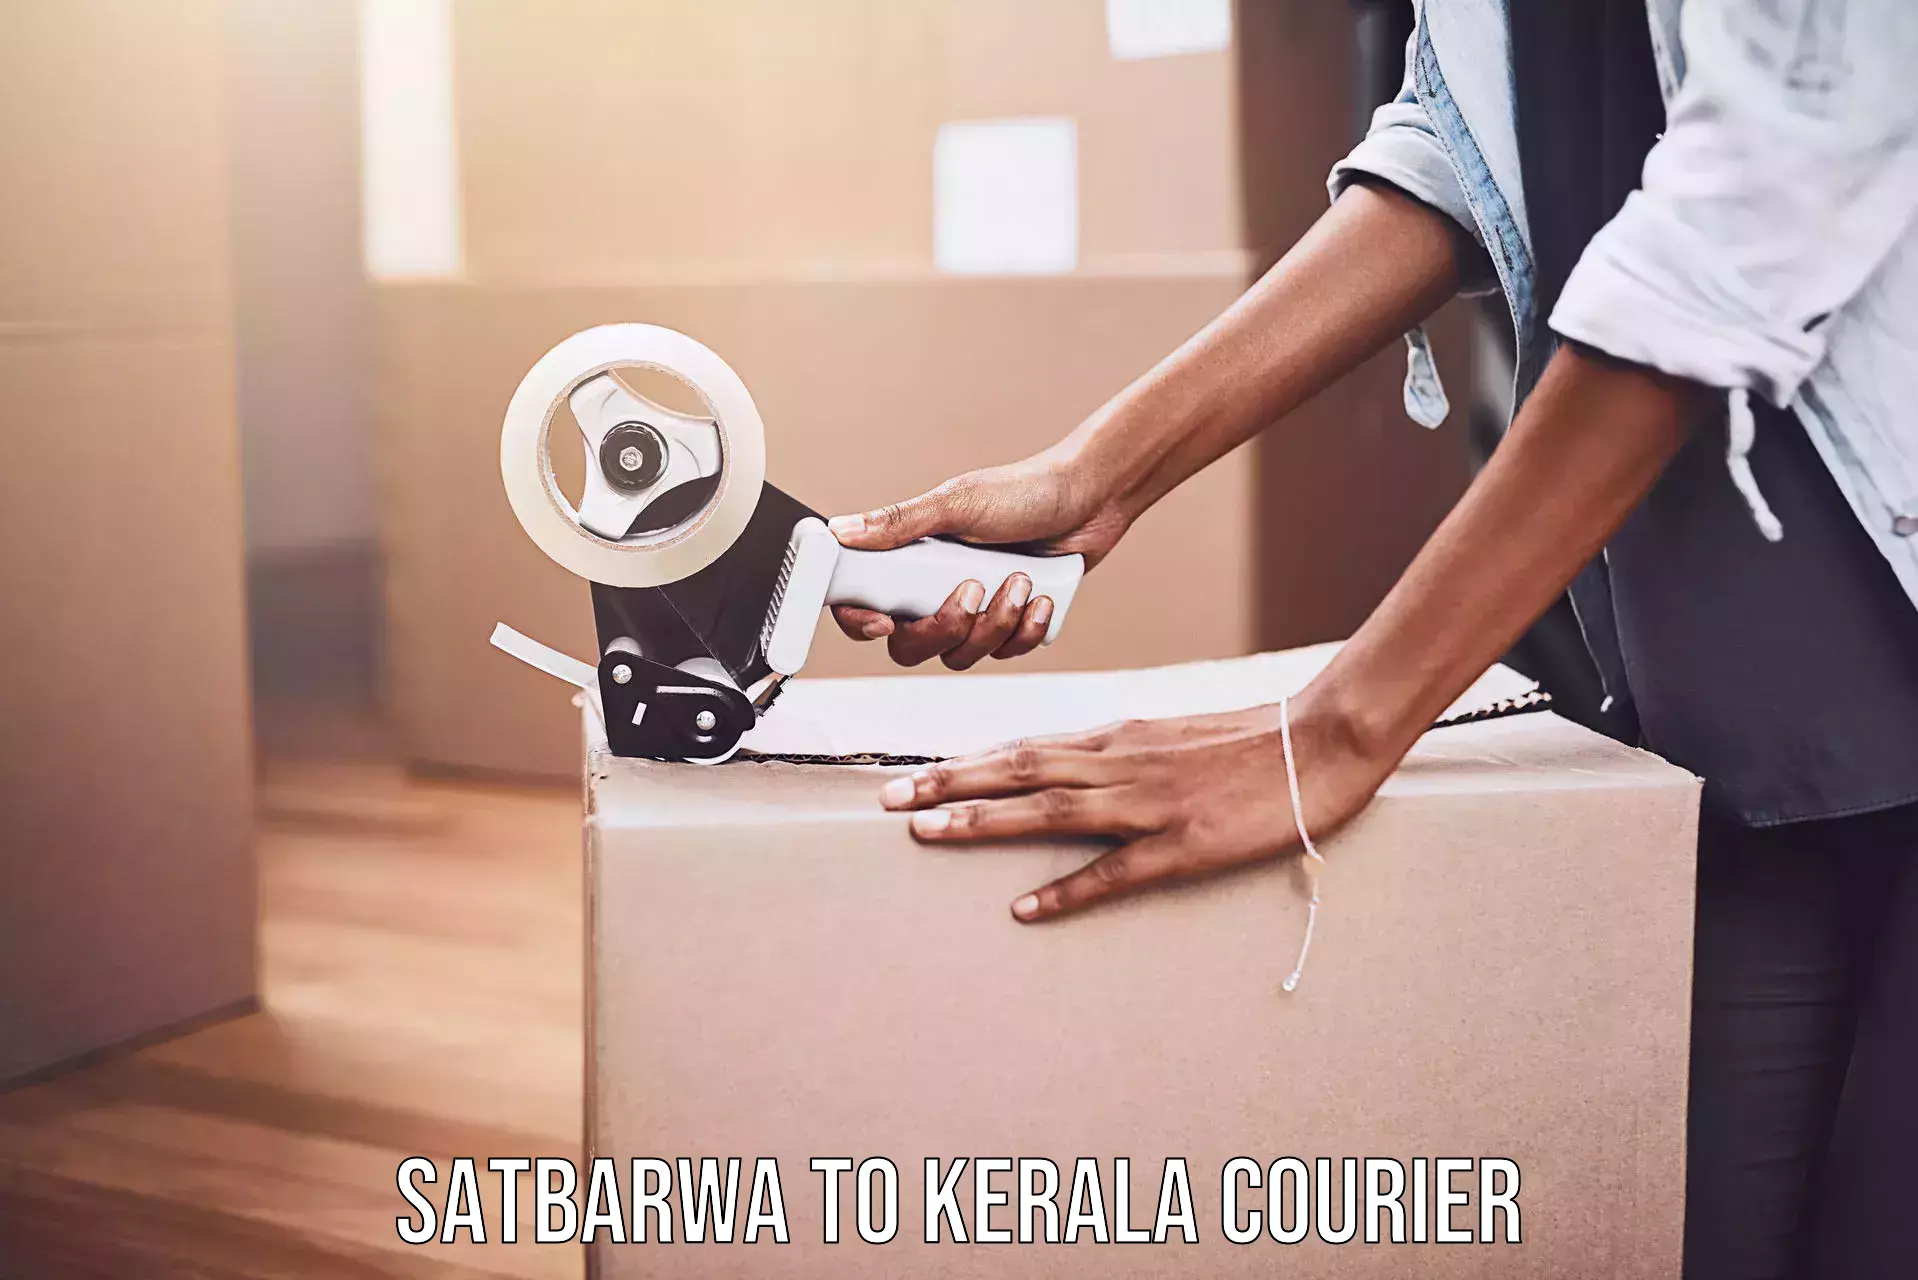 Next-day freight services Satbarwa to Kerala